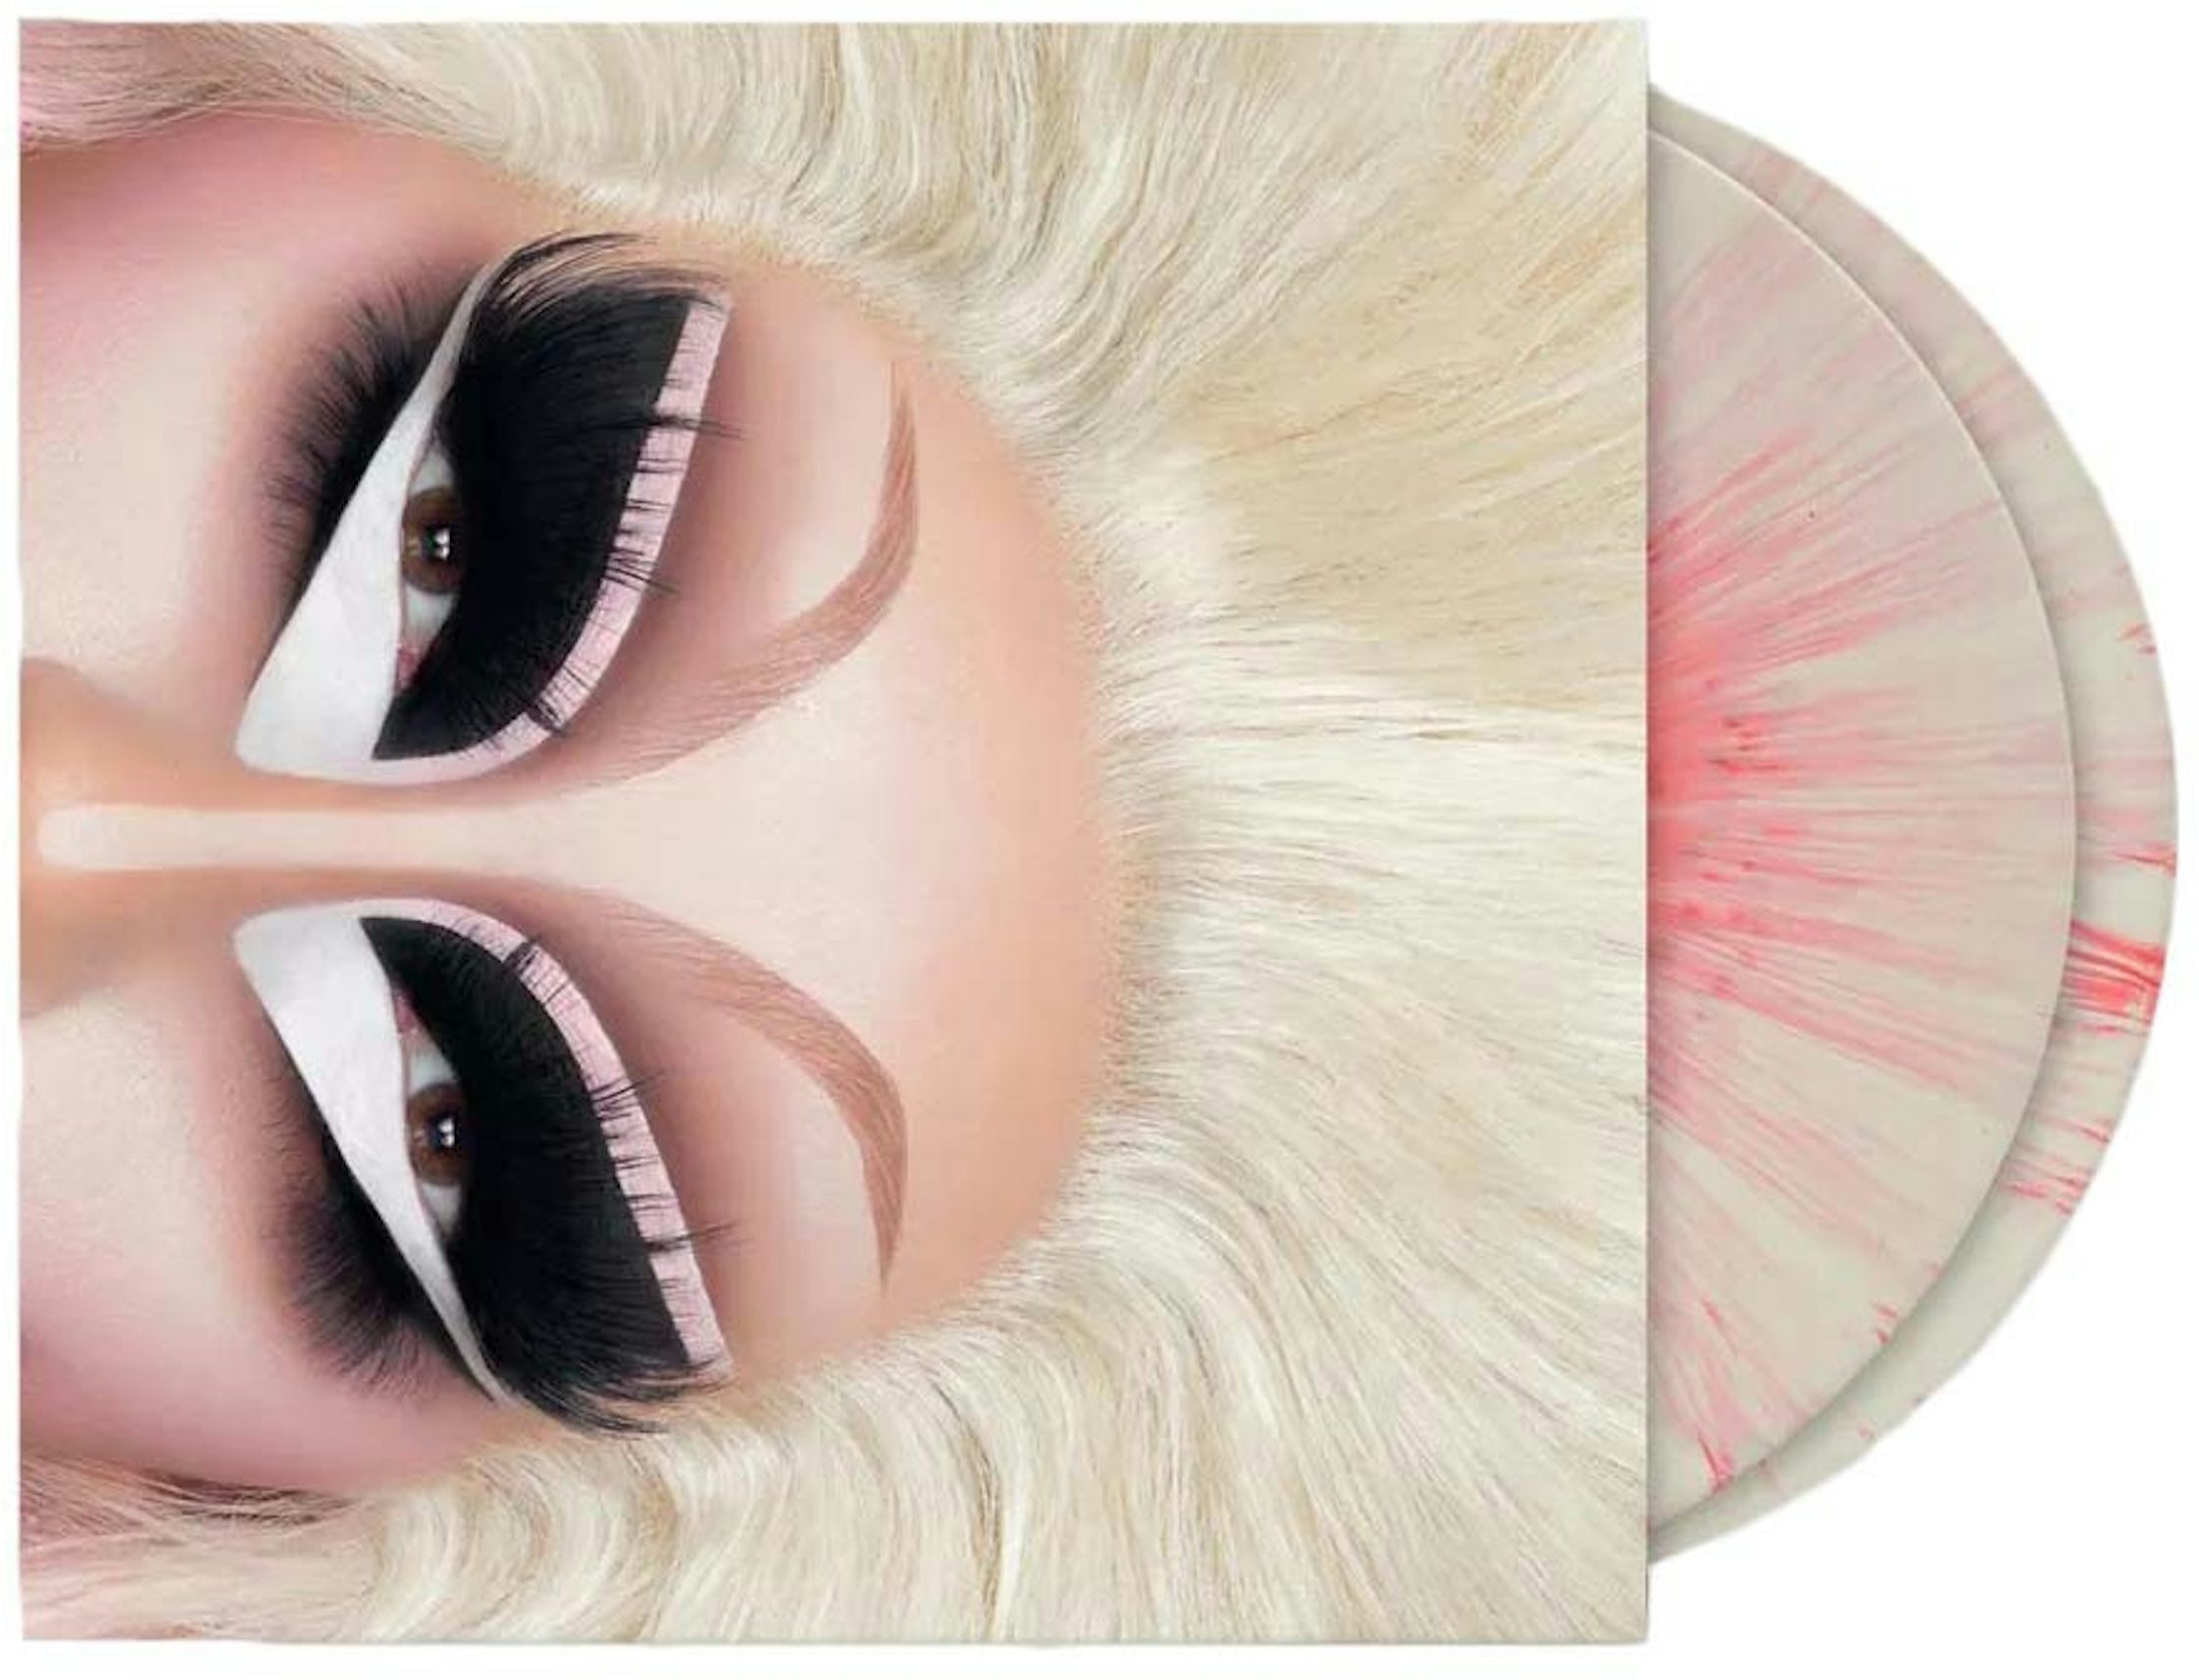 Mac Miller- The Divine Feminine Limited 2XLP Pink: CDs & Vinyl 